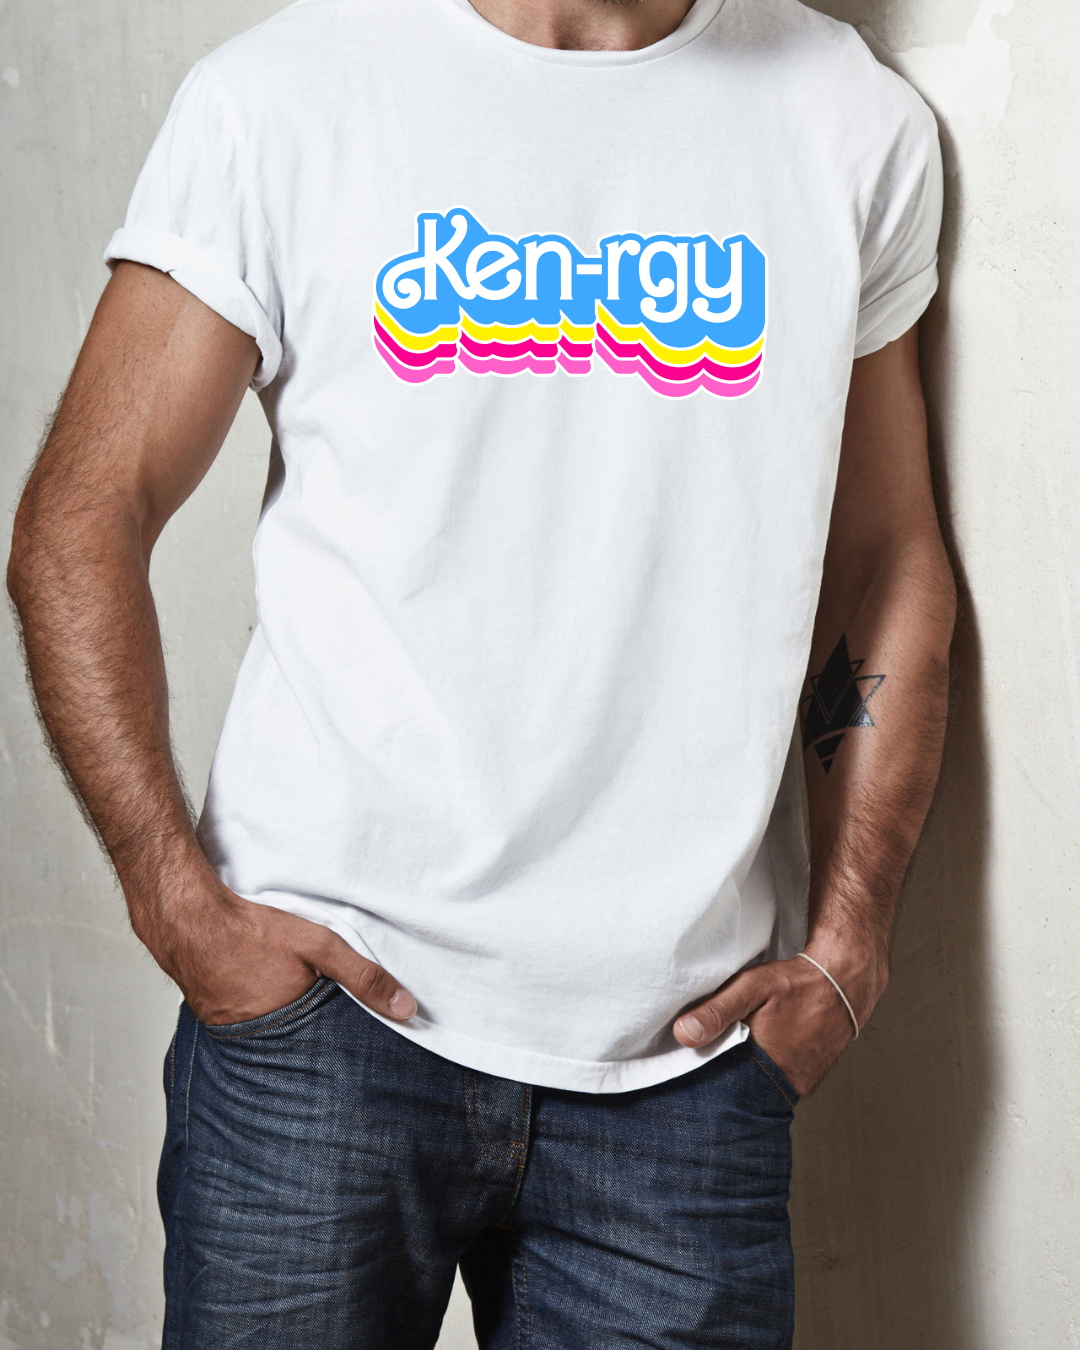 Ken -rgy t- shirt - color white